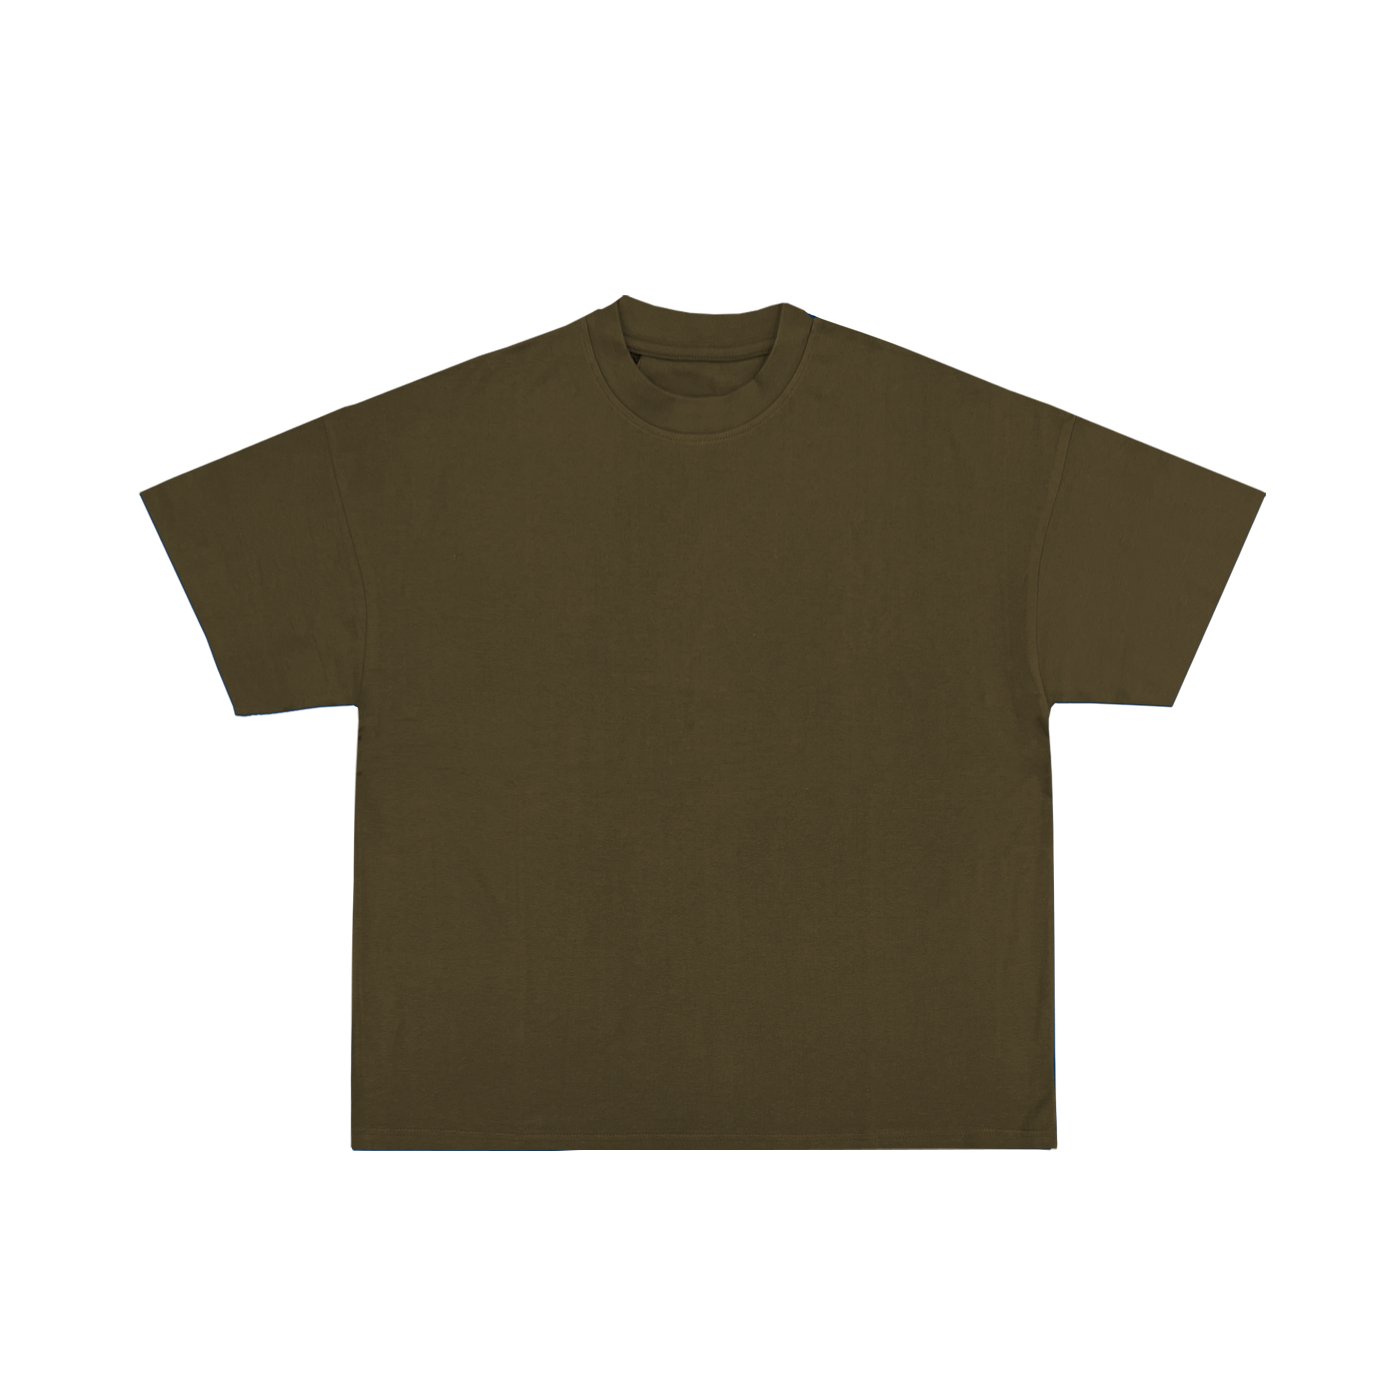 "T-shirt couleur olive en coton, coupe classique, idéal pour personnalisation sur prynt.shop."